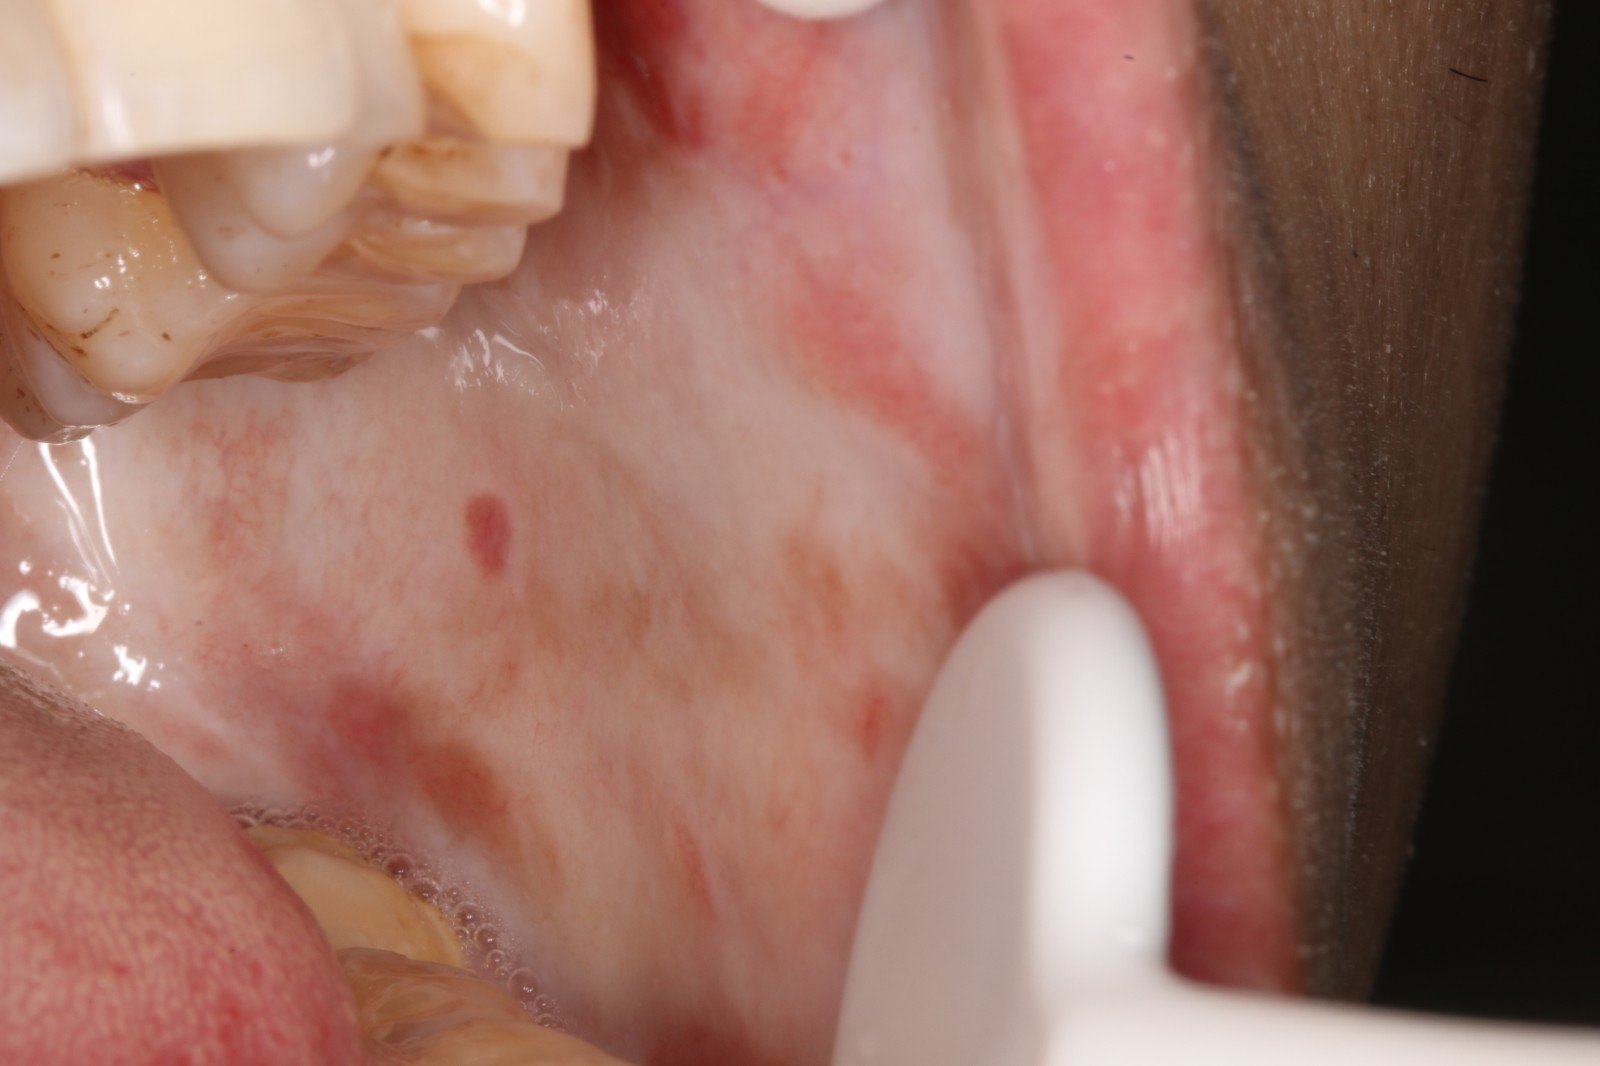 osf患者的一般临床表现是口腔黏膜的大片均质状白色病变,以颊粘膜最为